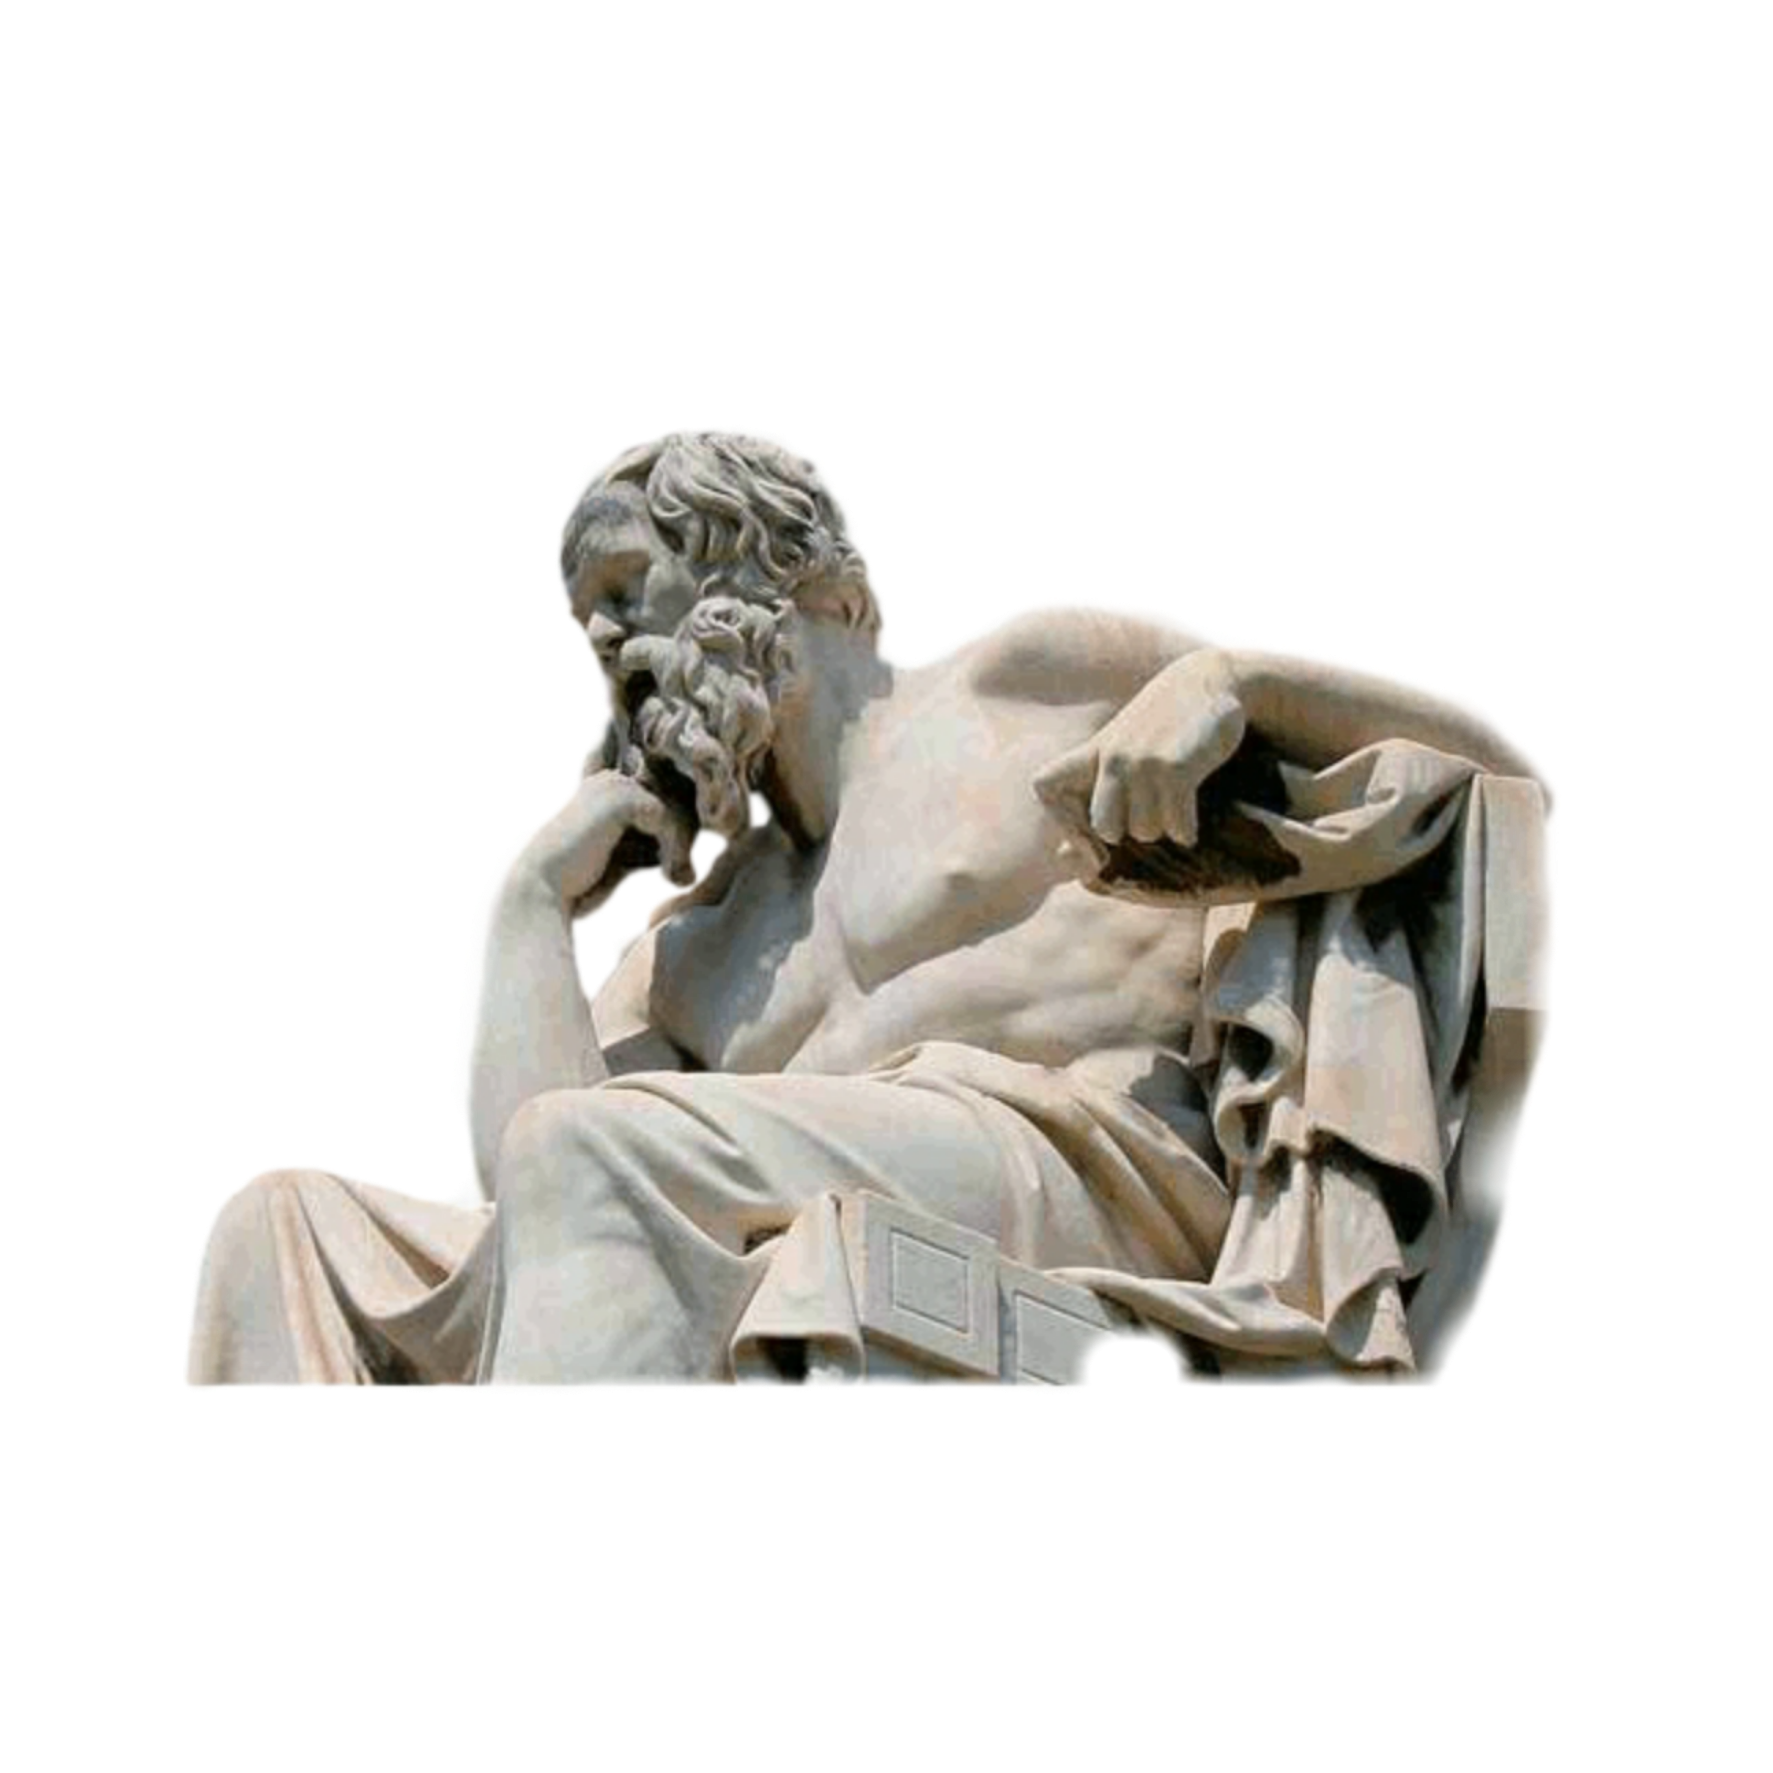 Сократ фото философа для презентации